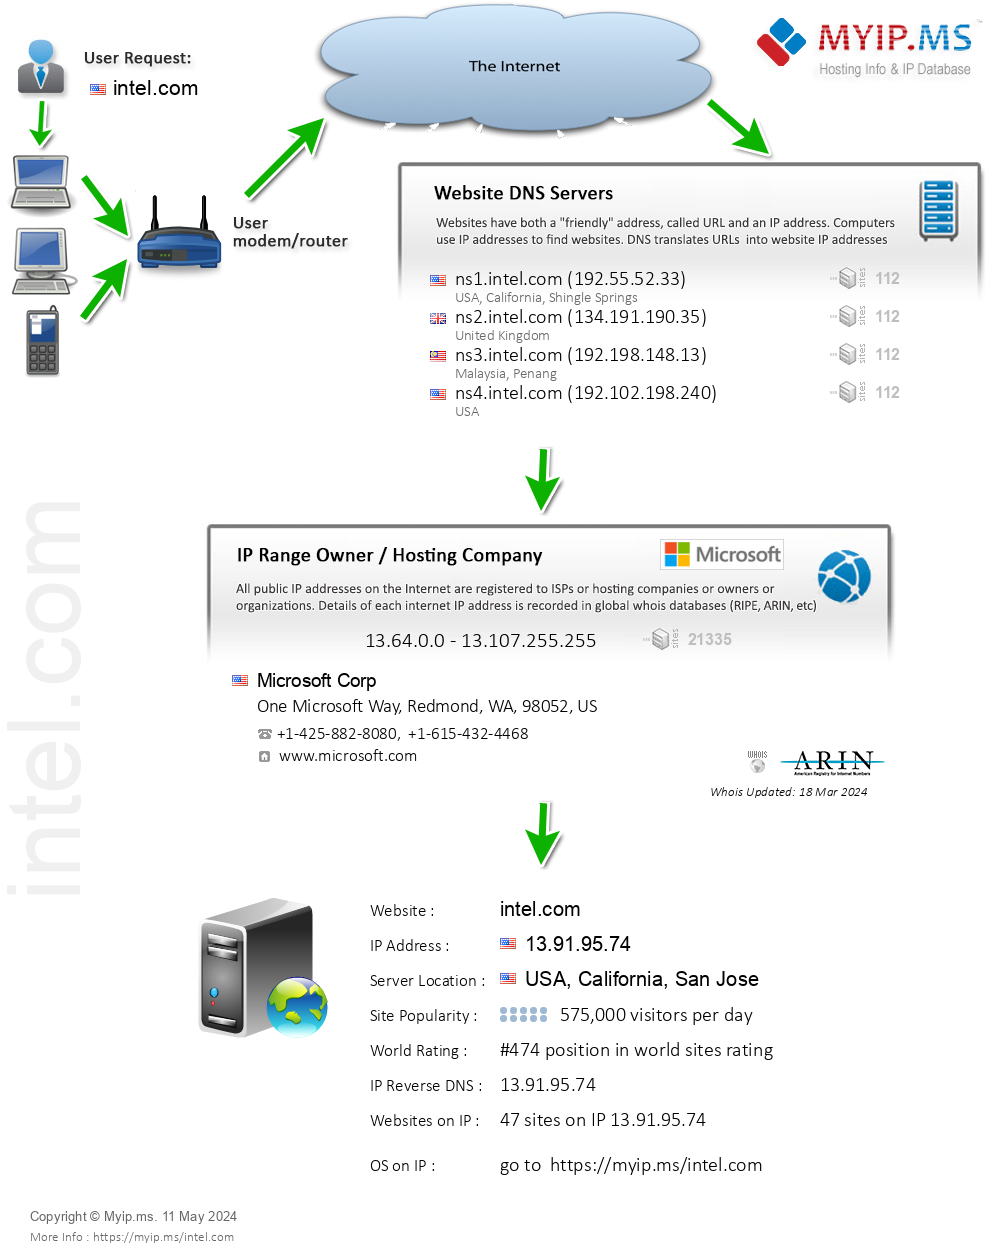 Intel.com - Website Hosting Visual IP Diagram